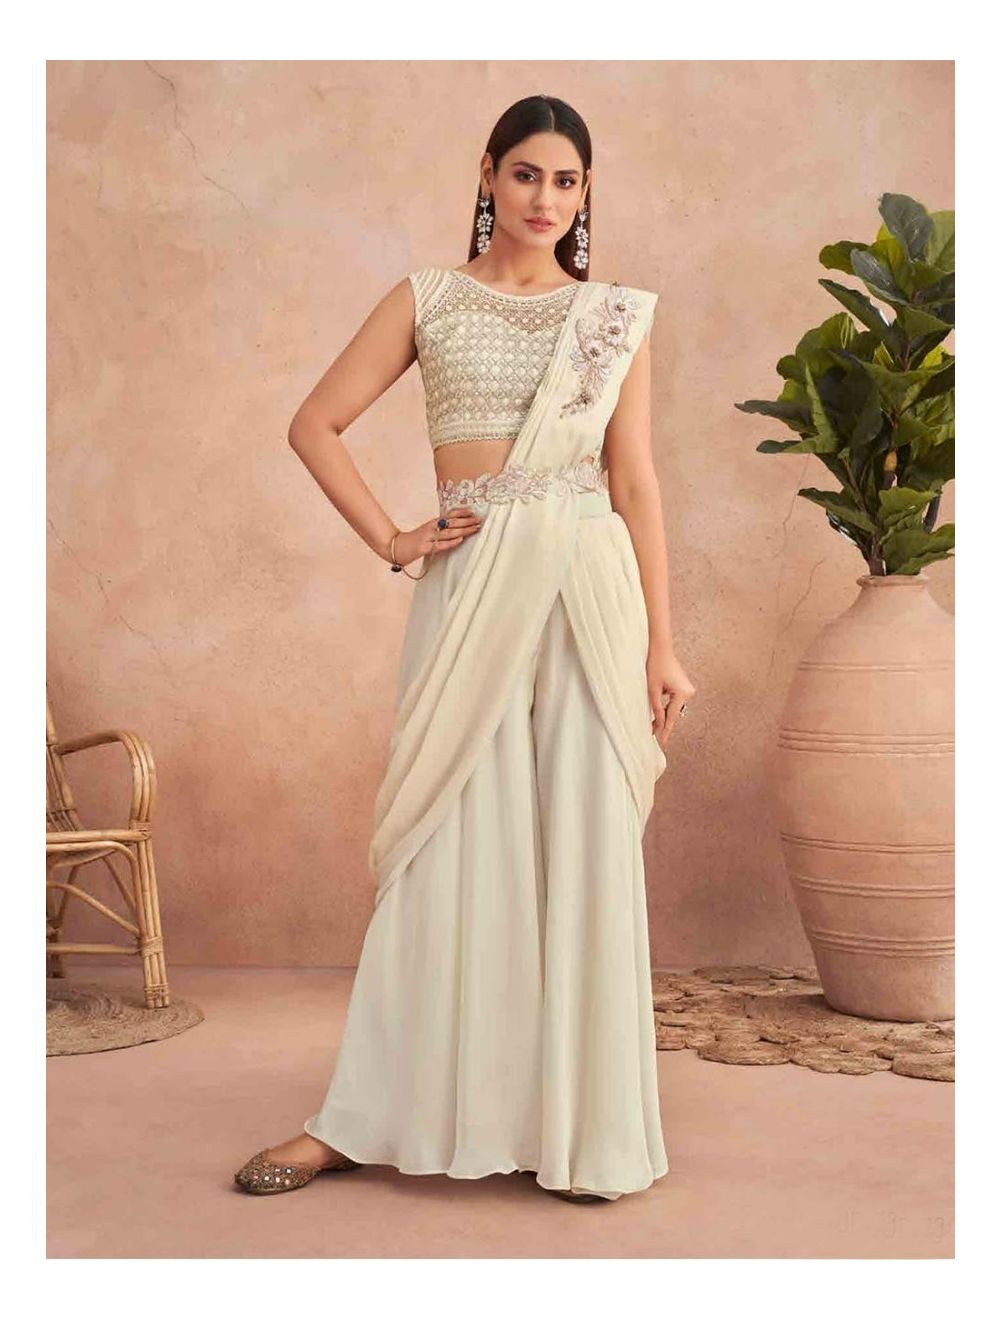 Green Lacha Suit Lengha Choli Lehenga Long Top Lehanga Indian Sari Saree  Dress | eBay